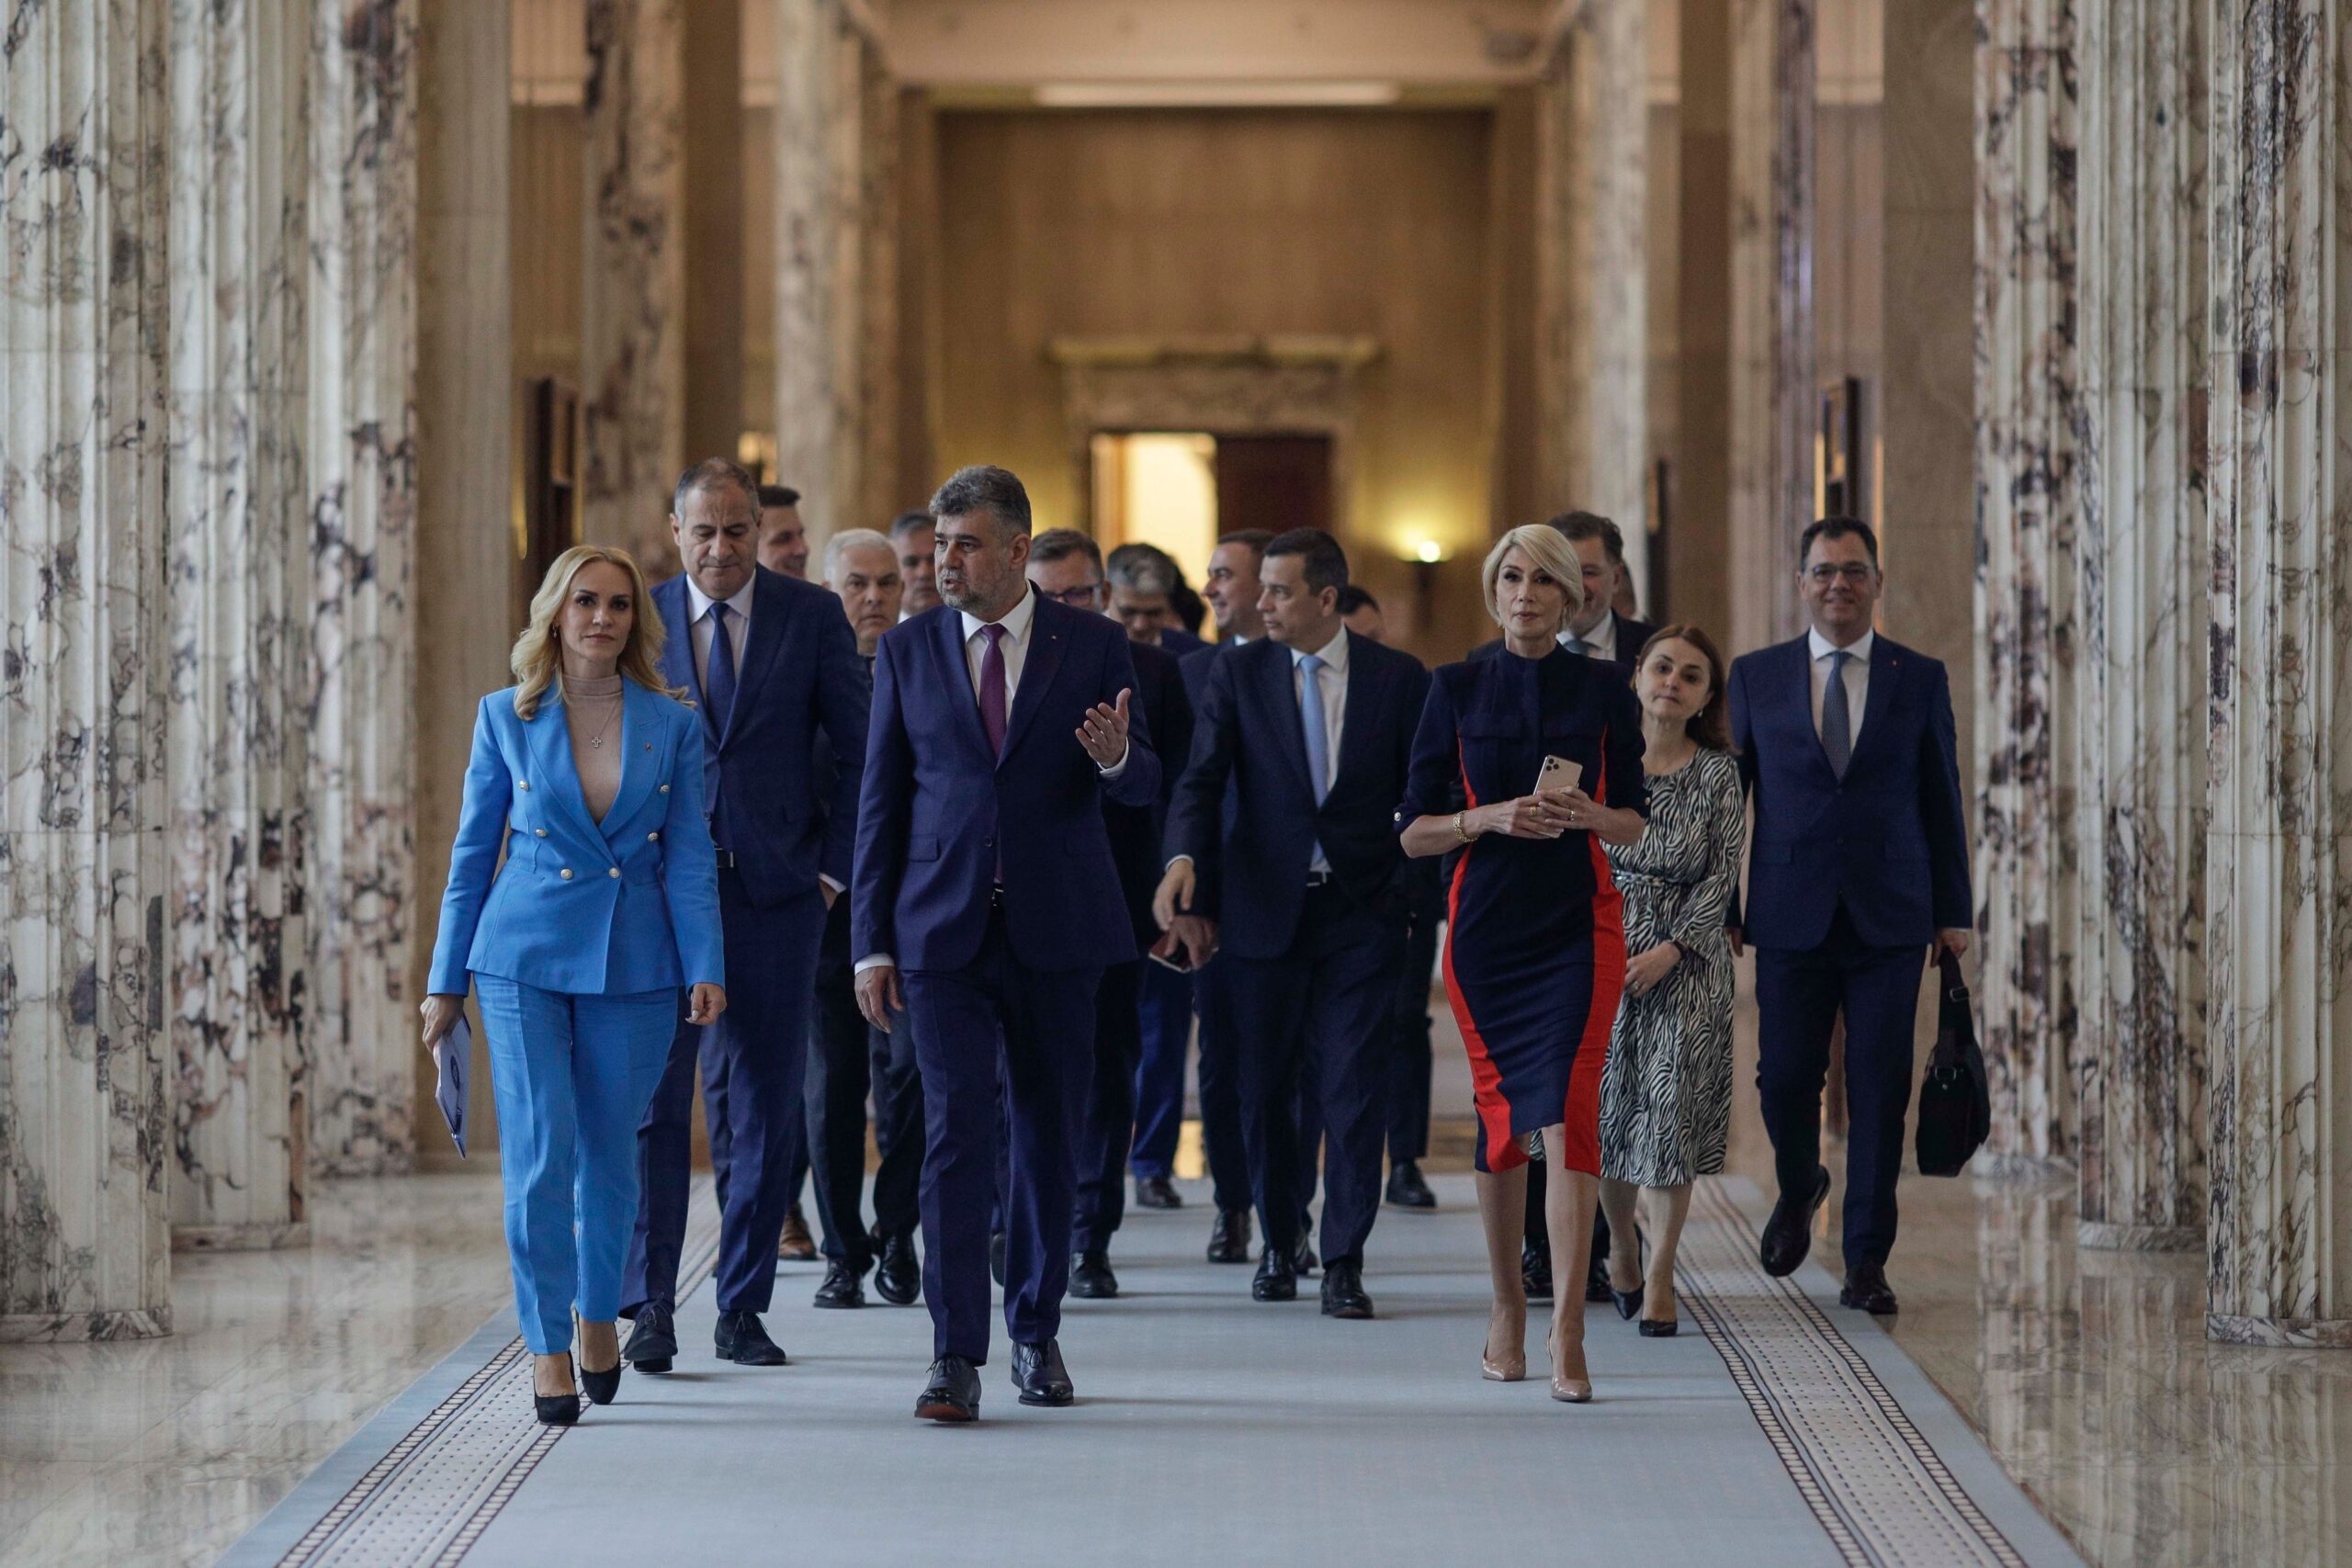  Angajarea răspunderii pe reforme, șah-mat dat contestatarilor Cabinetului Ciolacu. Mizele demersului